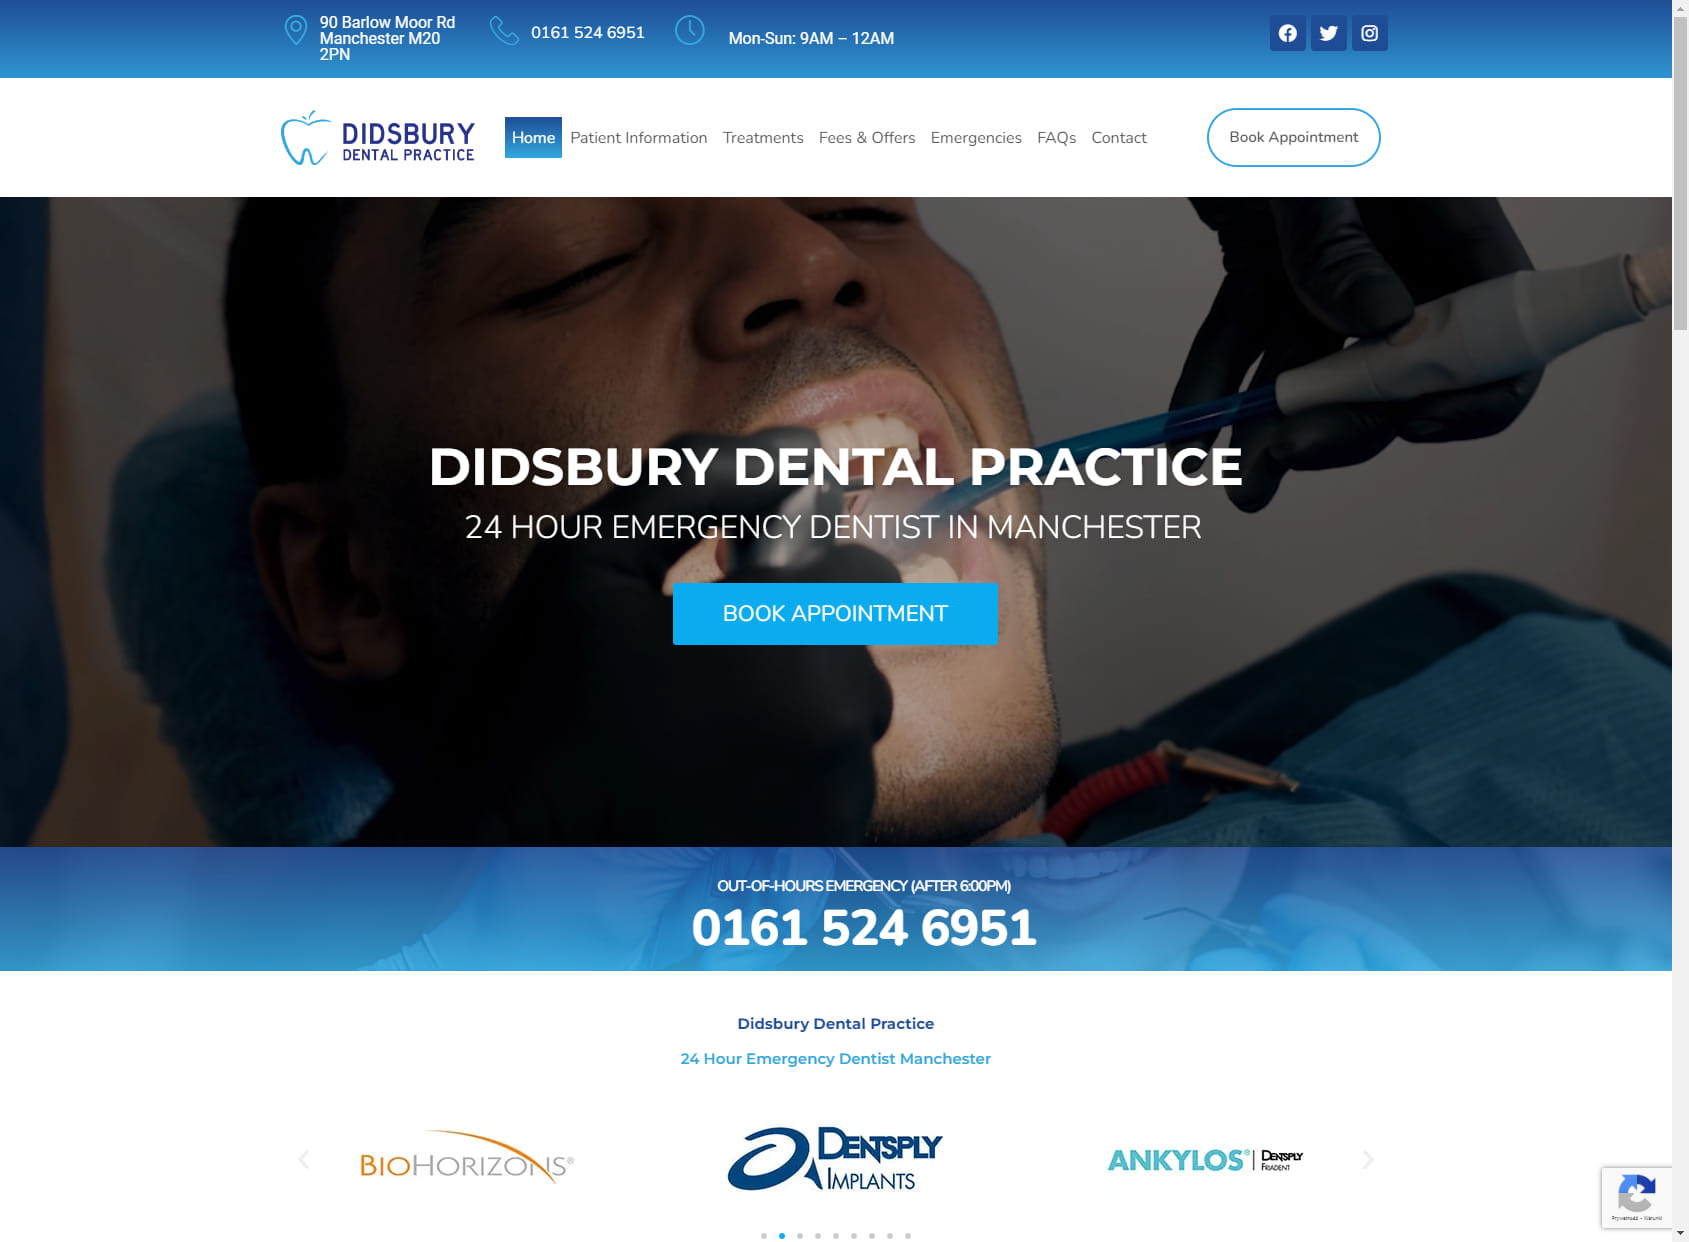 Didsbury Dental Practice